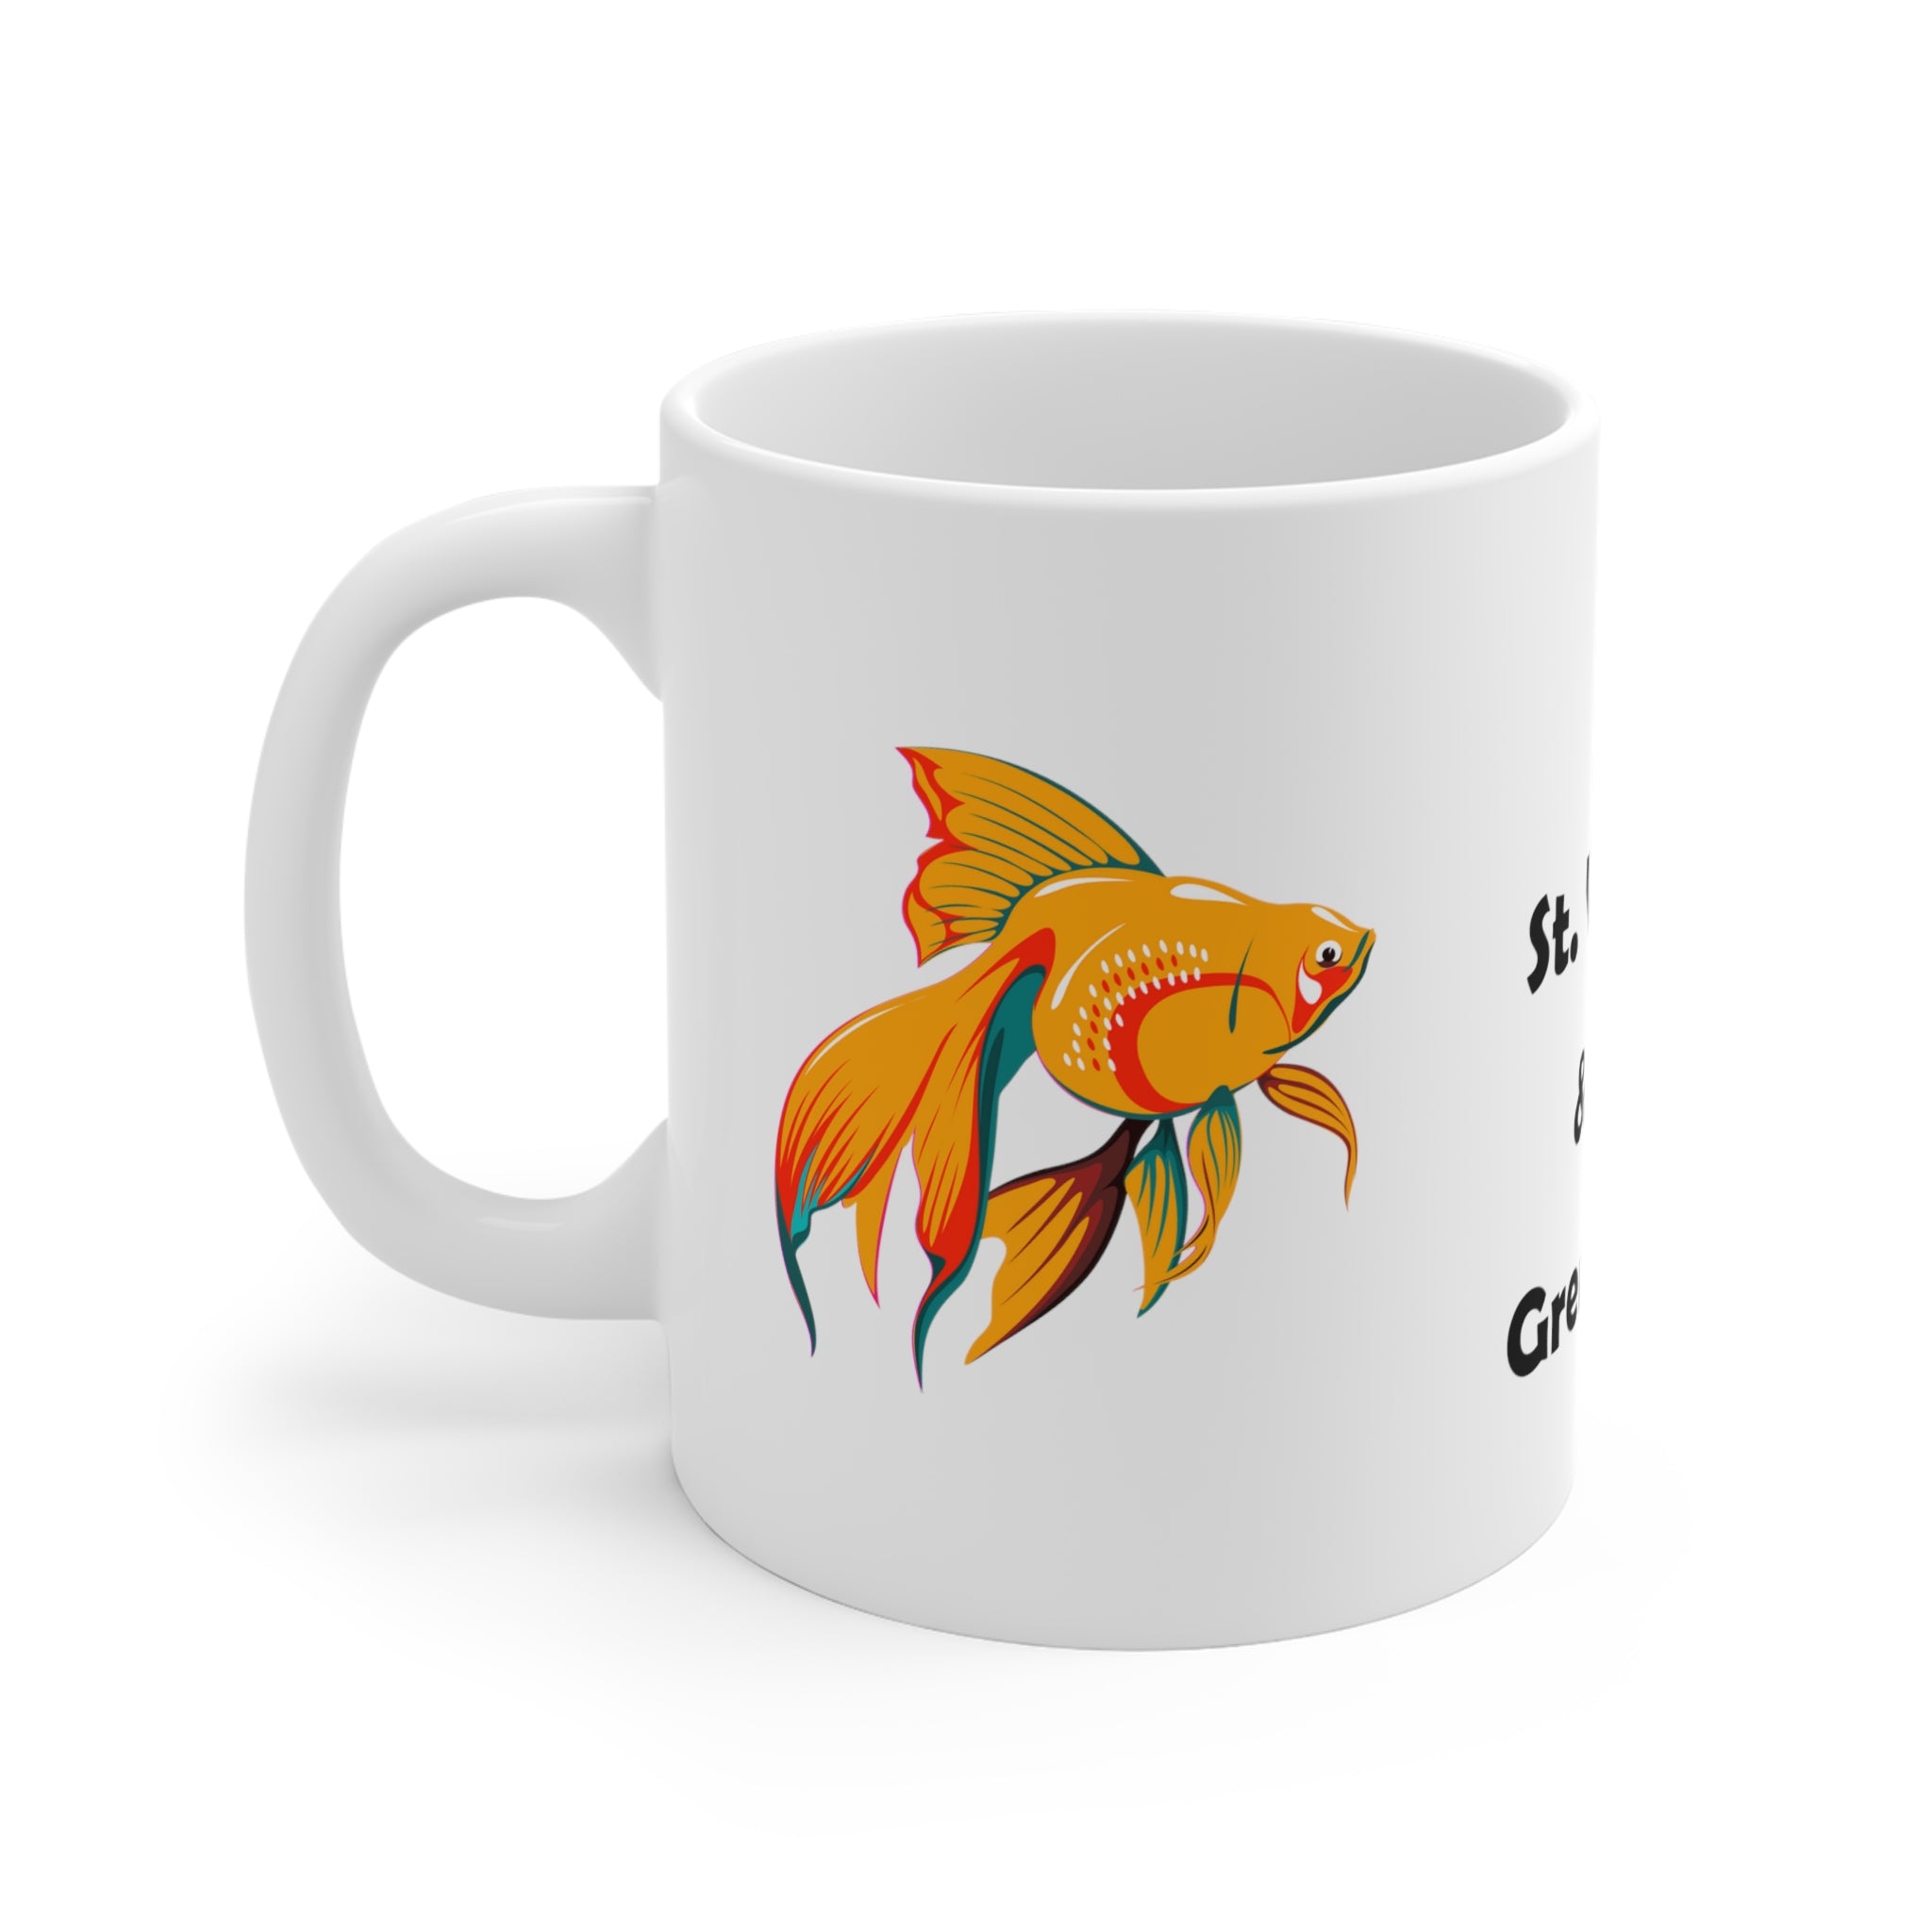 11 oz St. Vincent and the Grenadines souvenir ceramic mug with a goldfish design